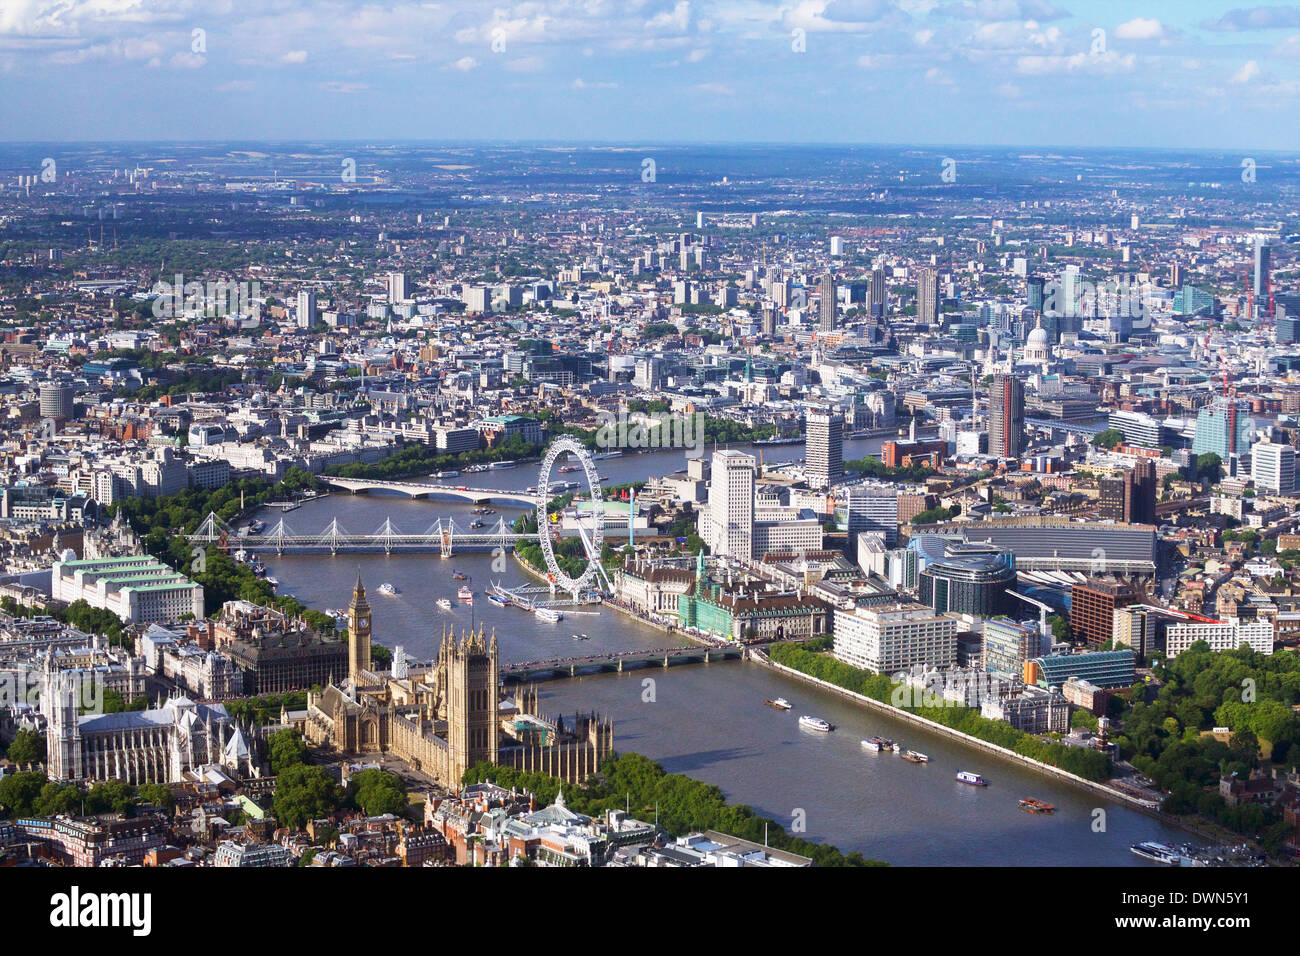 Luftaufnahme der Houses of Parliament, Westminster Abbey, London Eye und Themse, London, England, Vereinigtes Königreich, Europa Stockfoto